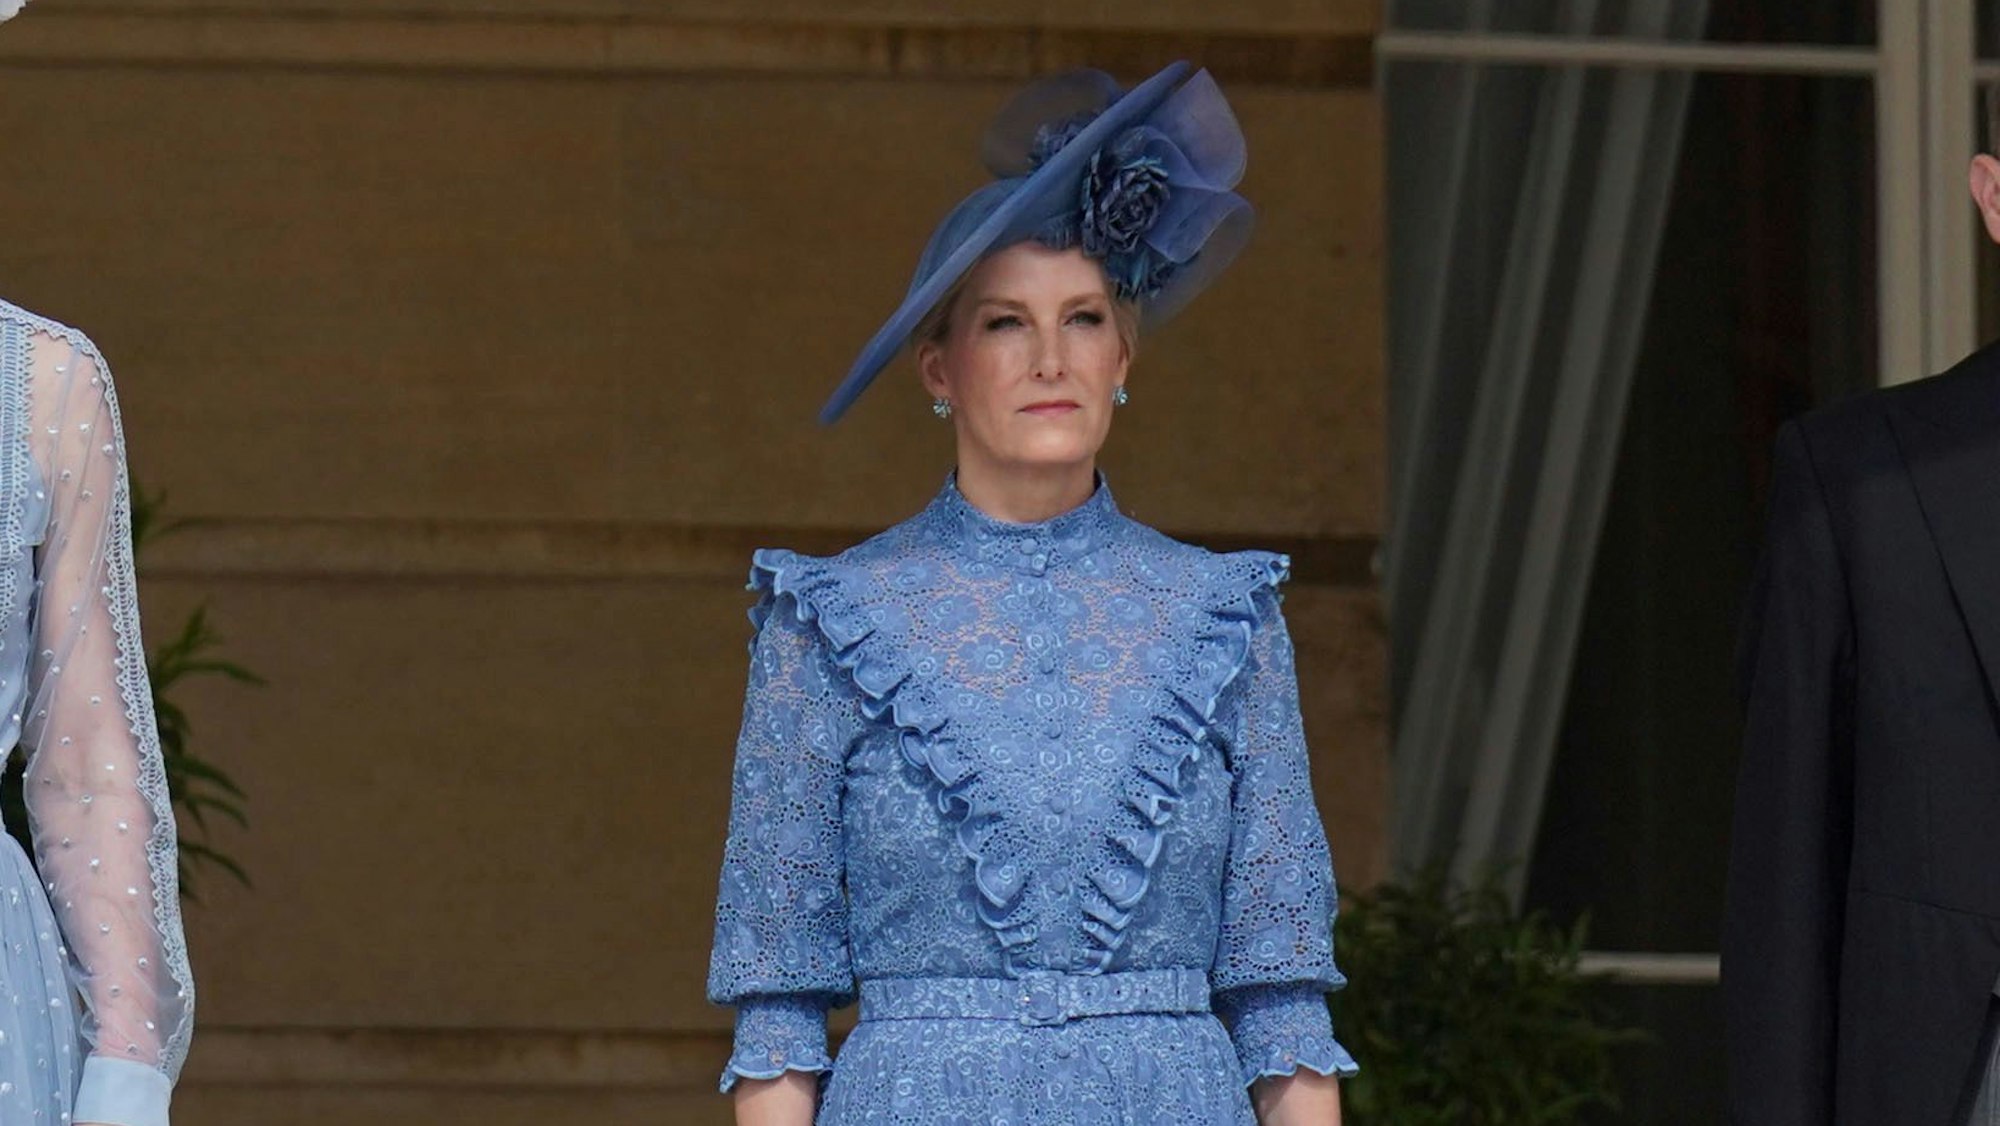 Herzogin Sophie nahm bereits Tage vor dem Unfall an einer Gartenparty im Buckingham Palace teil, um die Krönung von König Charles III. zu feiern.